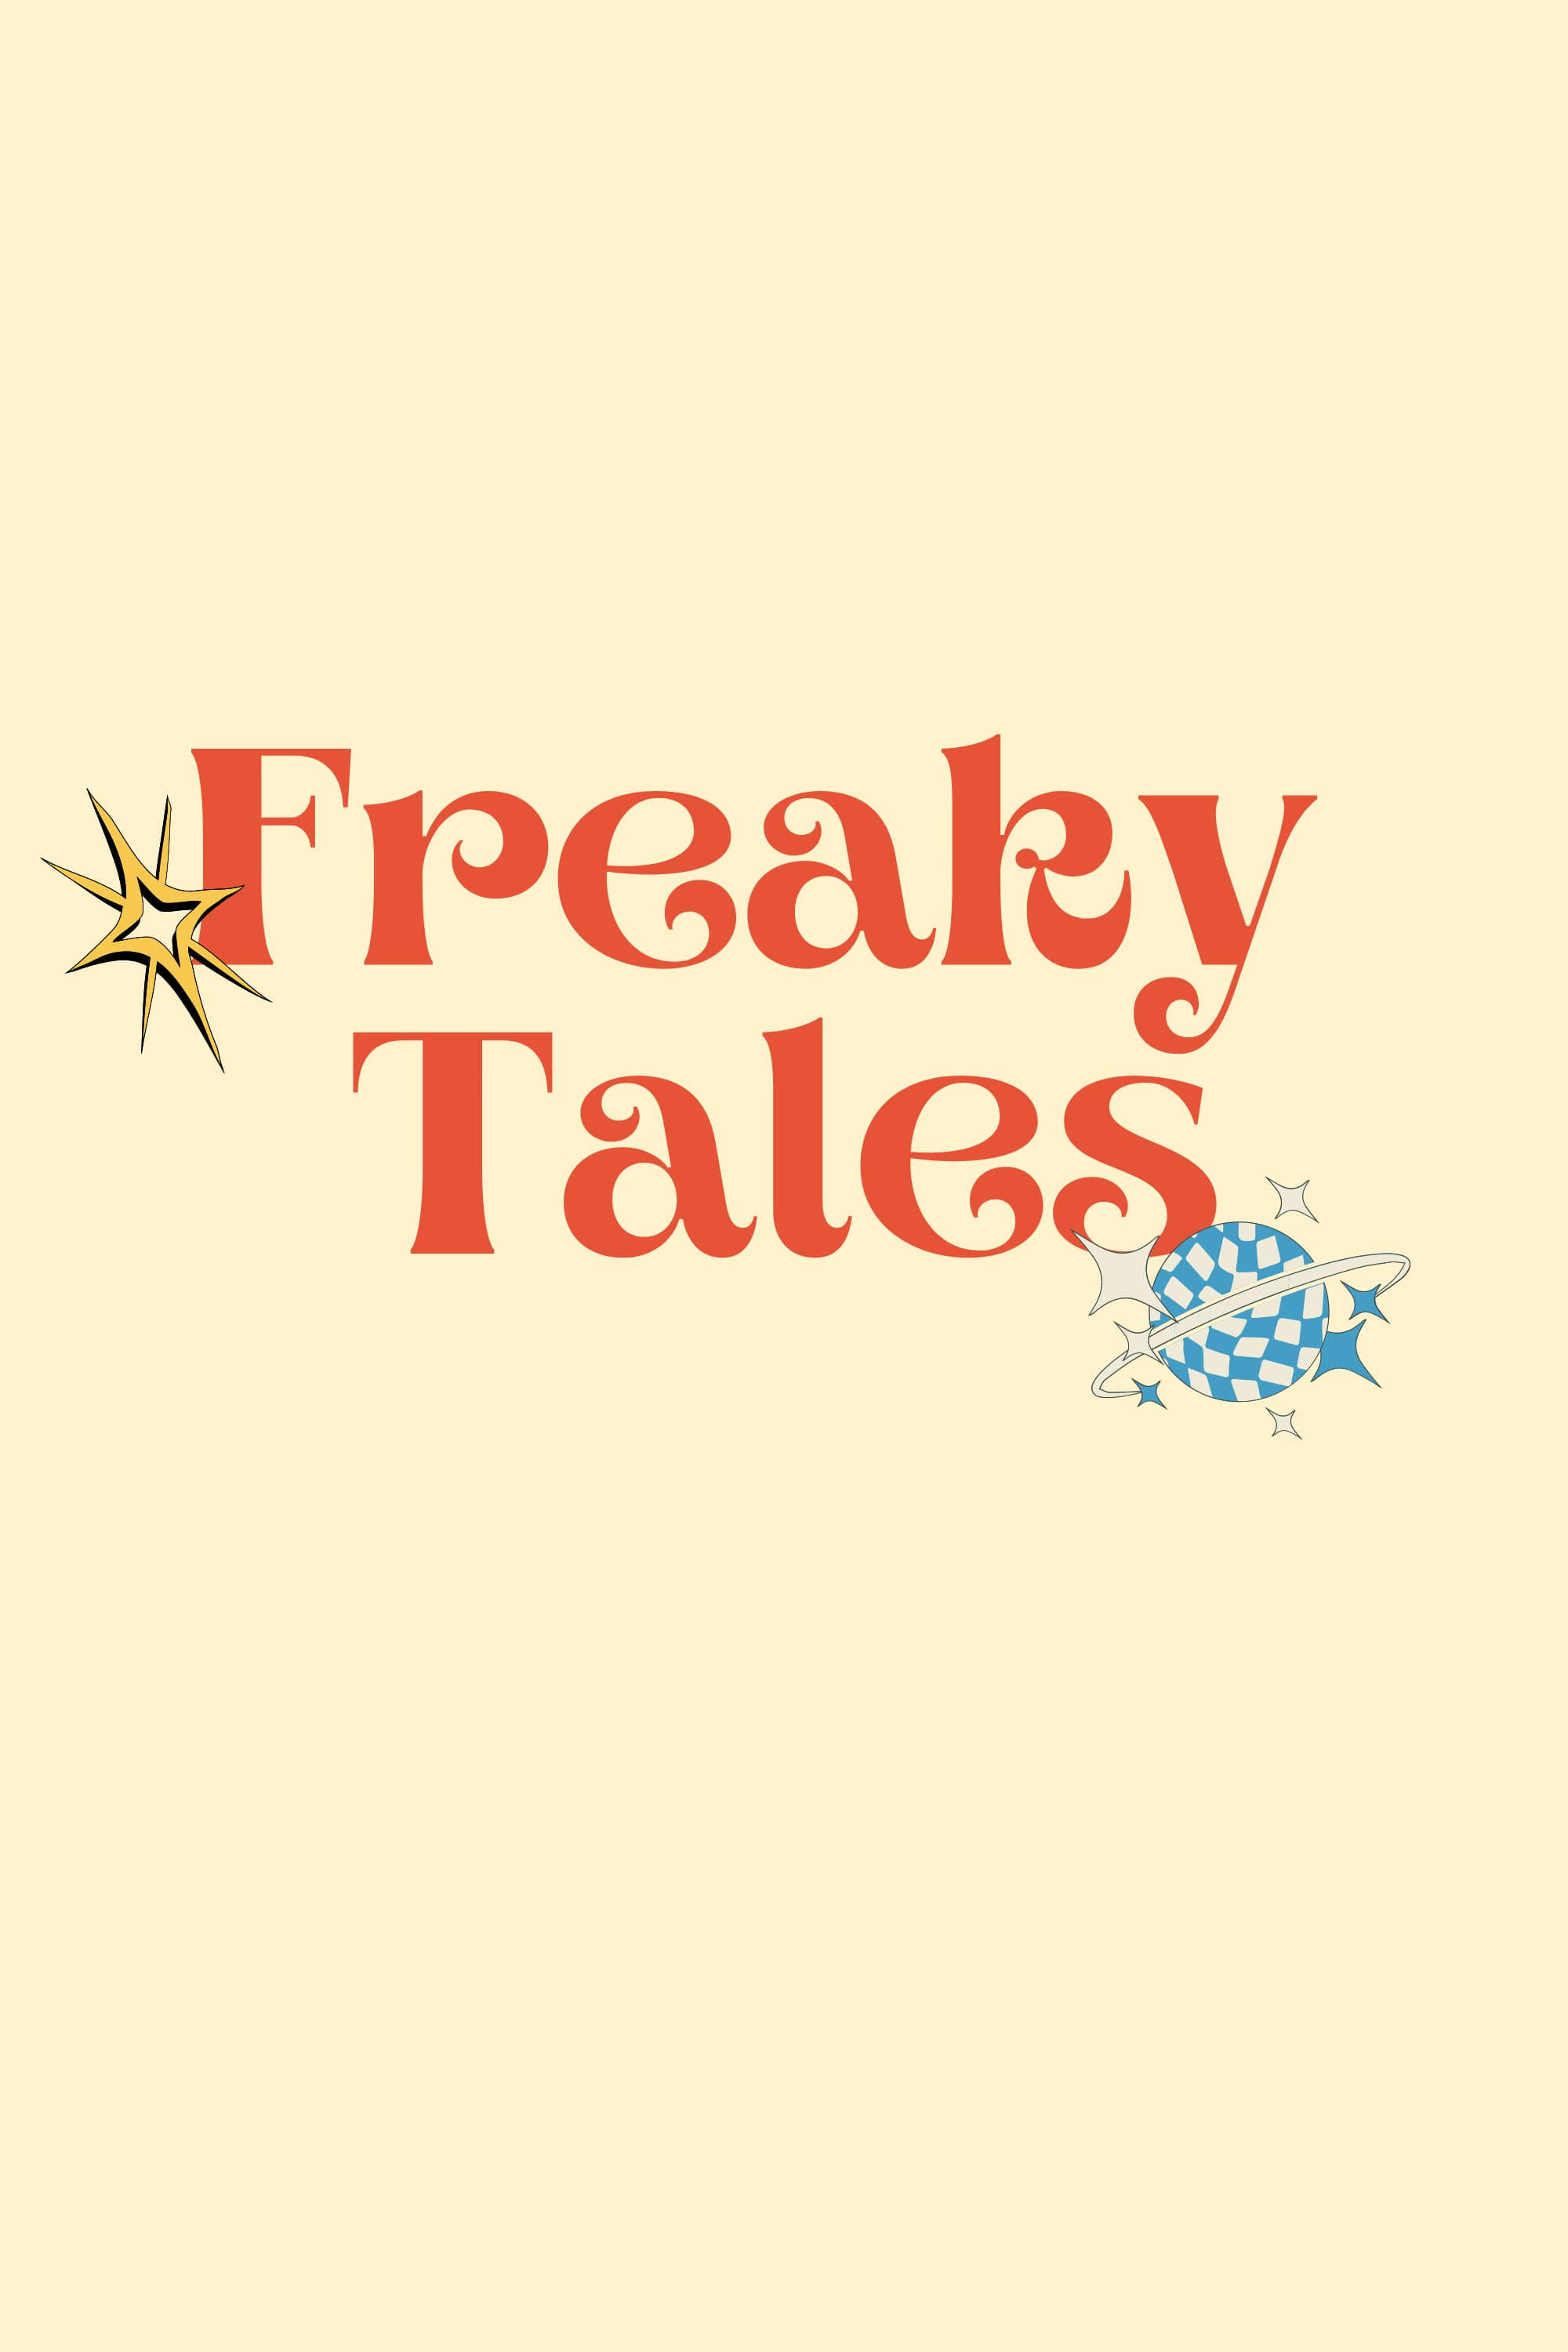 Freaky Tales